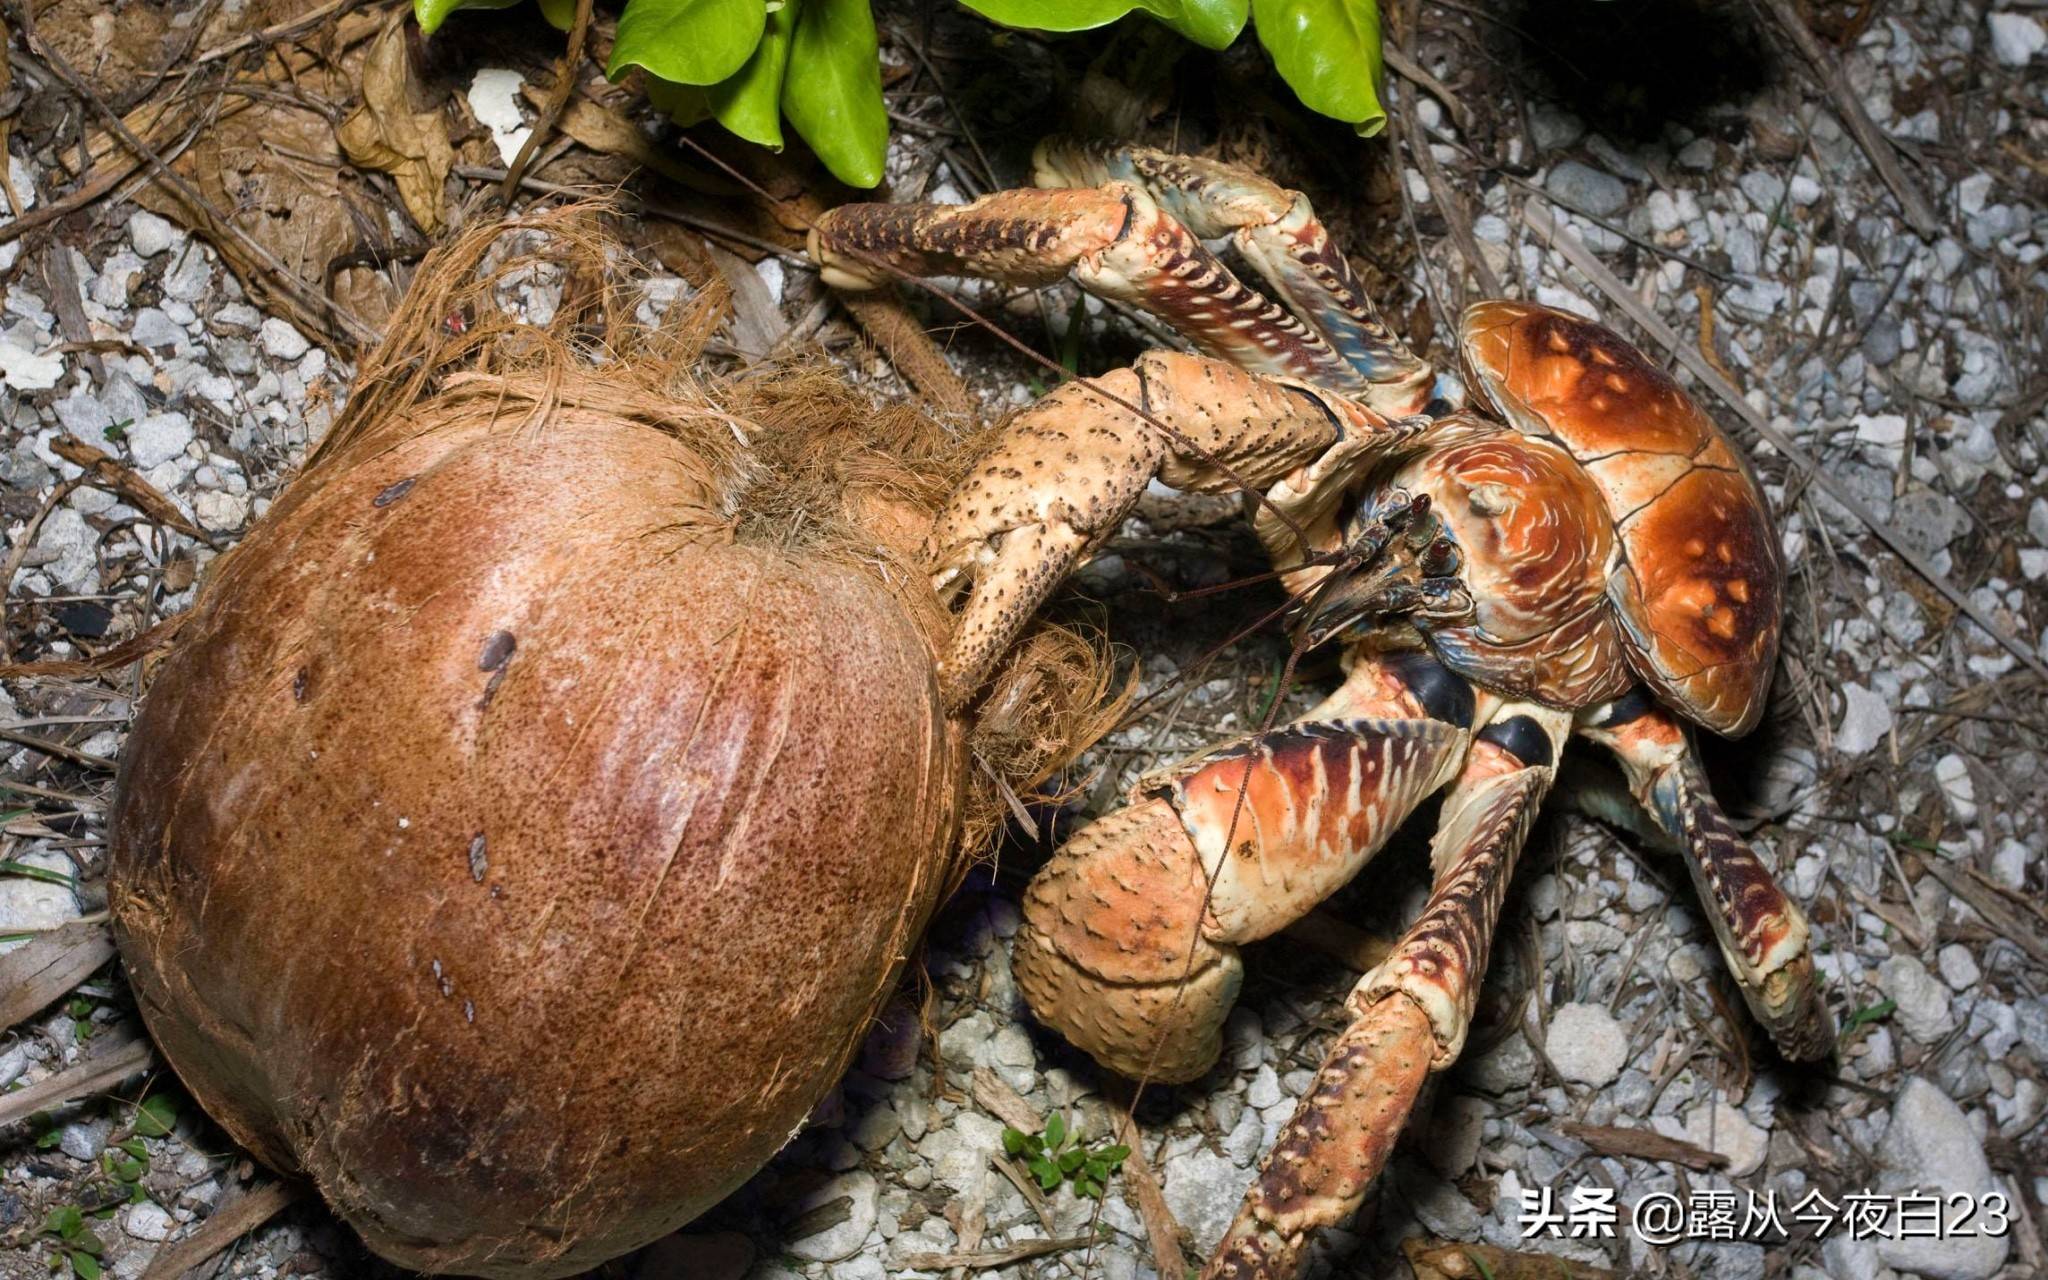 这种会开椰子的螃蟹才是蟹中帝王